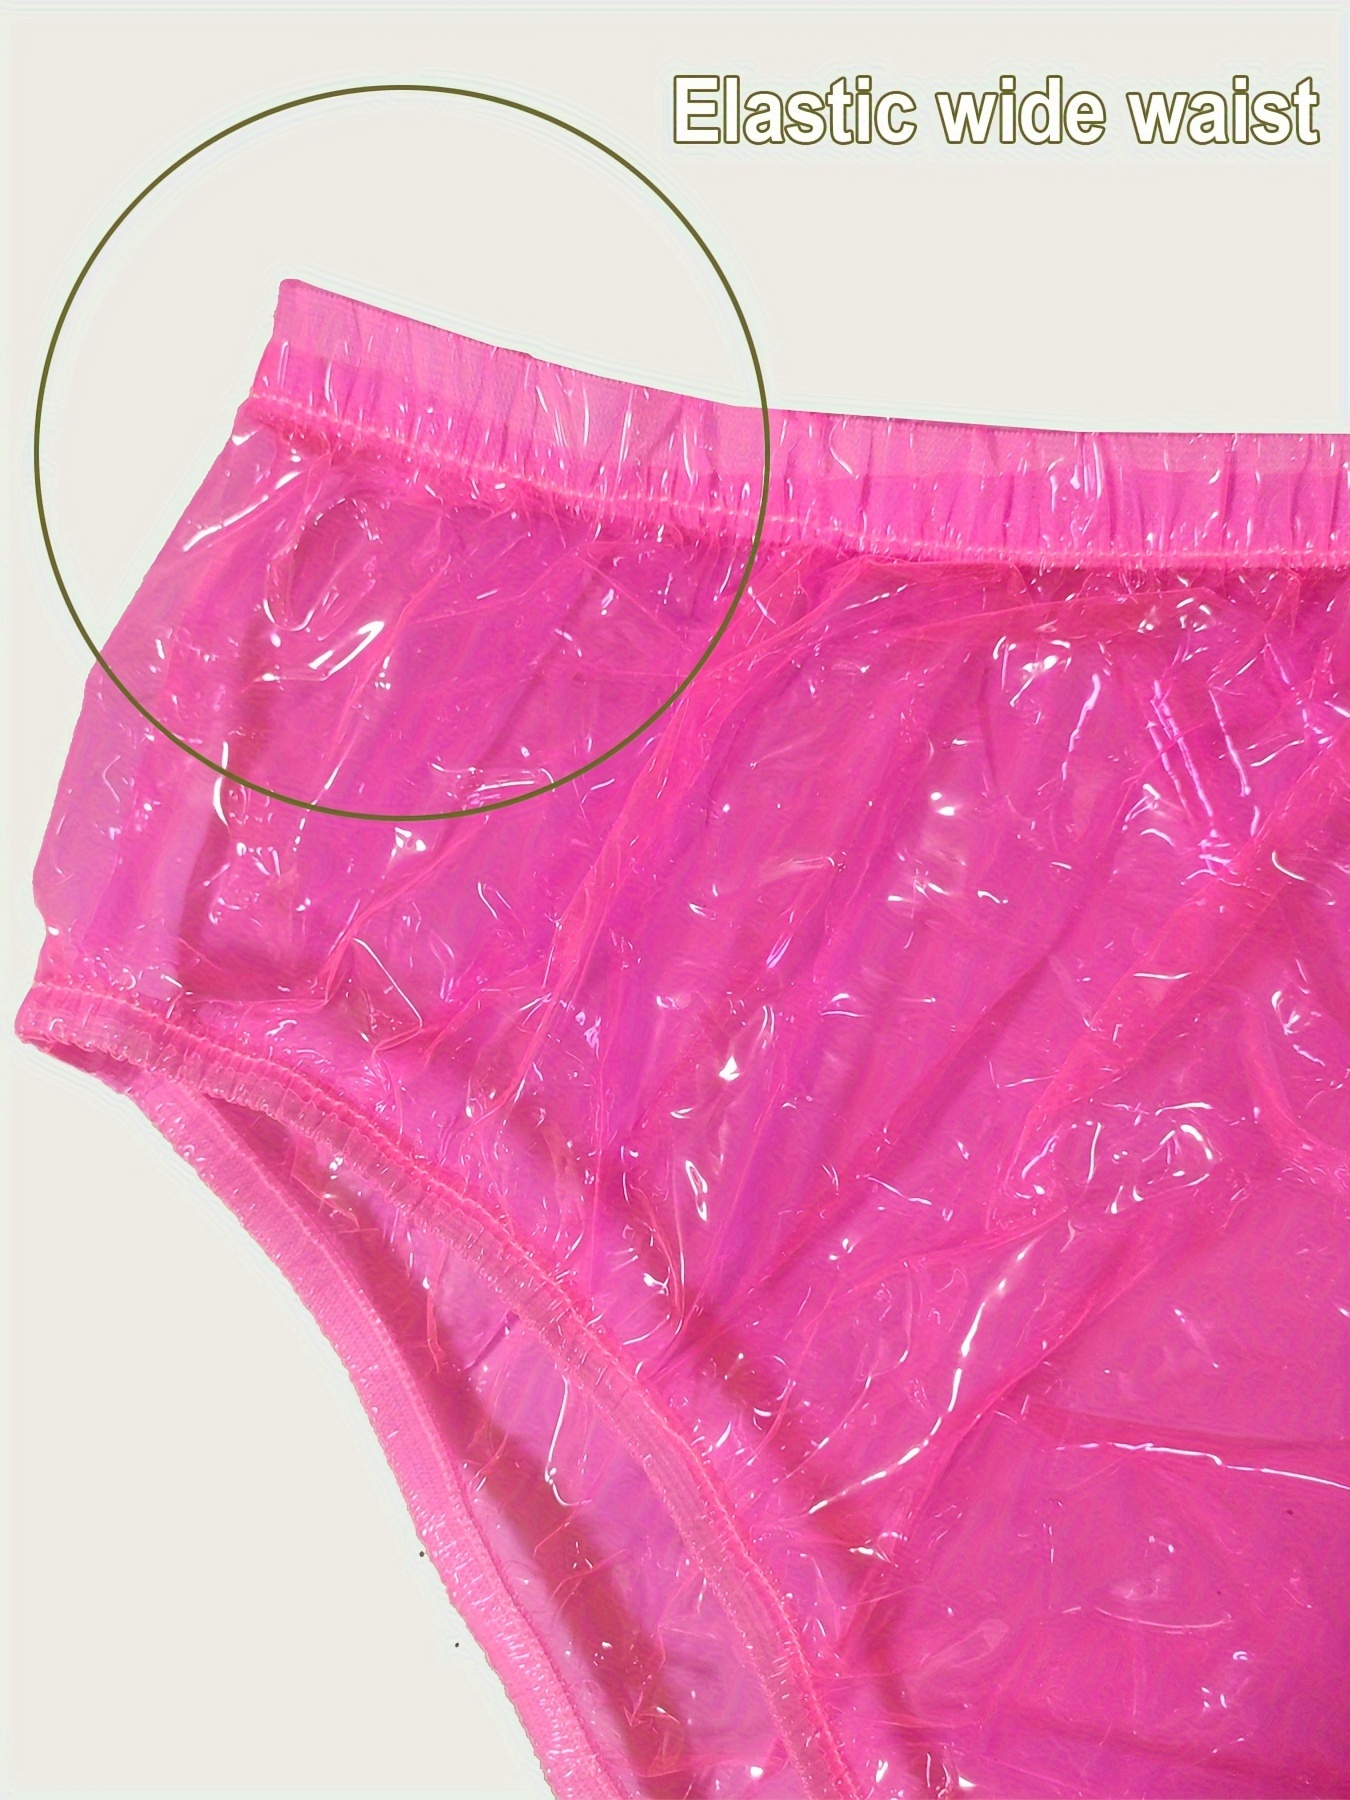 Men's Pvc Underwear Sexy Transparent waist Briefs Casual - Temu